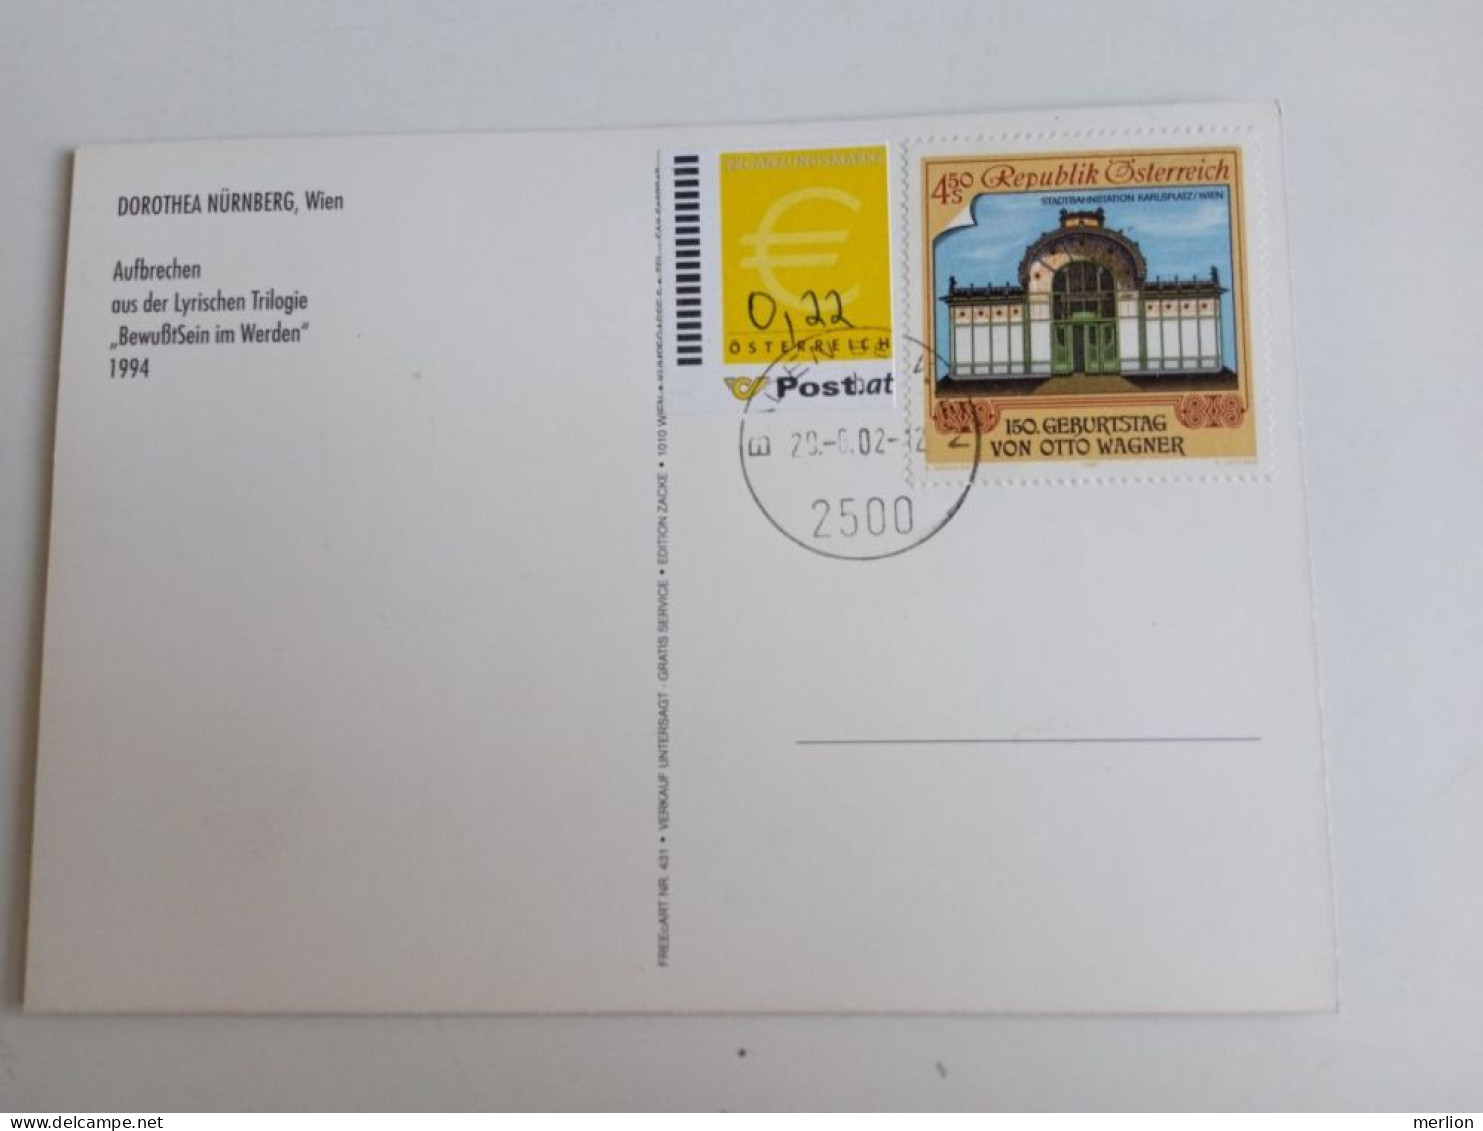 D203014  Österreich   Postkarte Vom 29.06.2002 Mit Ergänzungsmarke € 0,22  Mit Stempel  Baden Bei Wien - Lettres & Documents